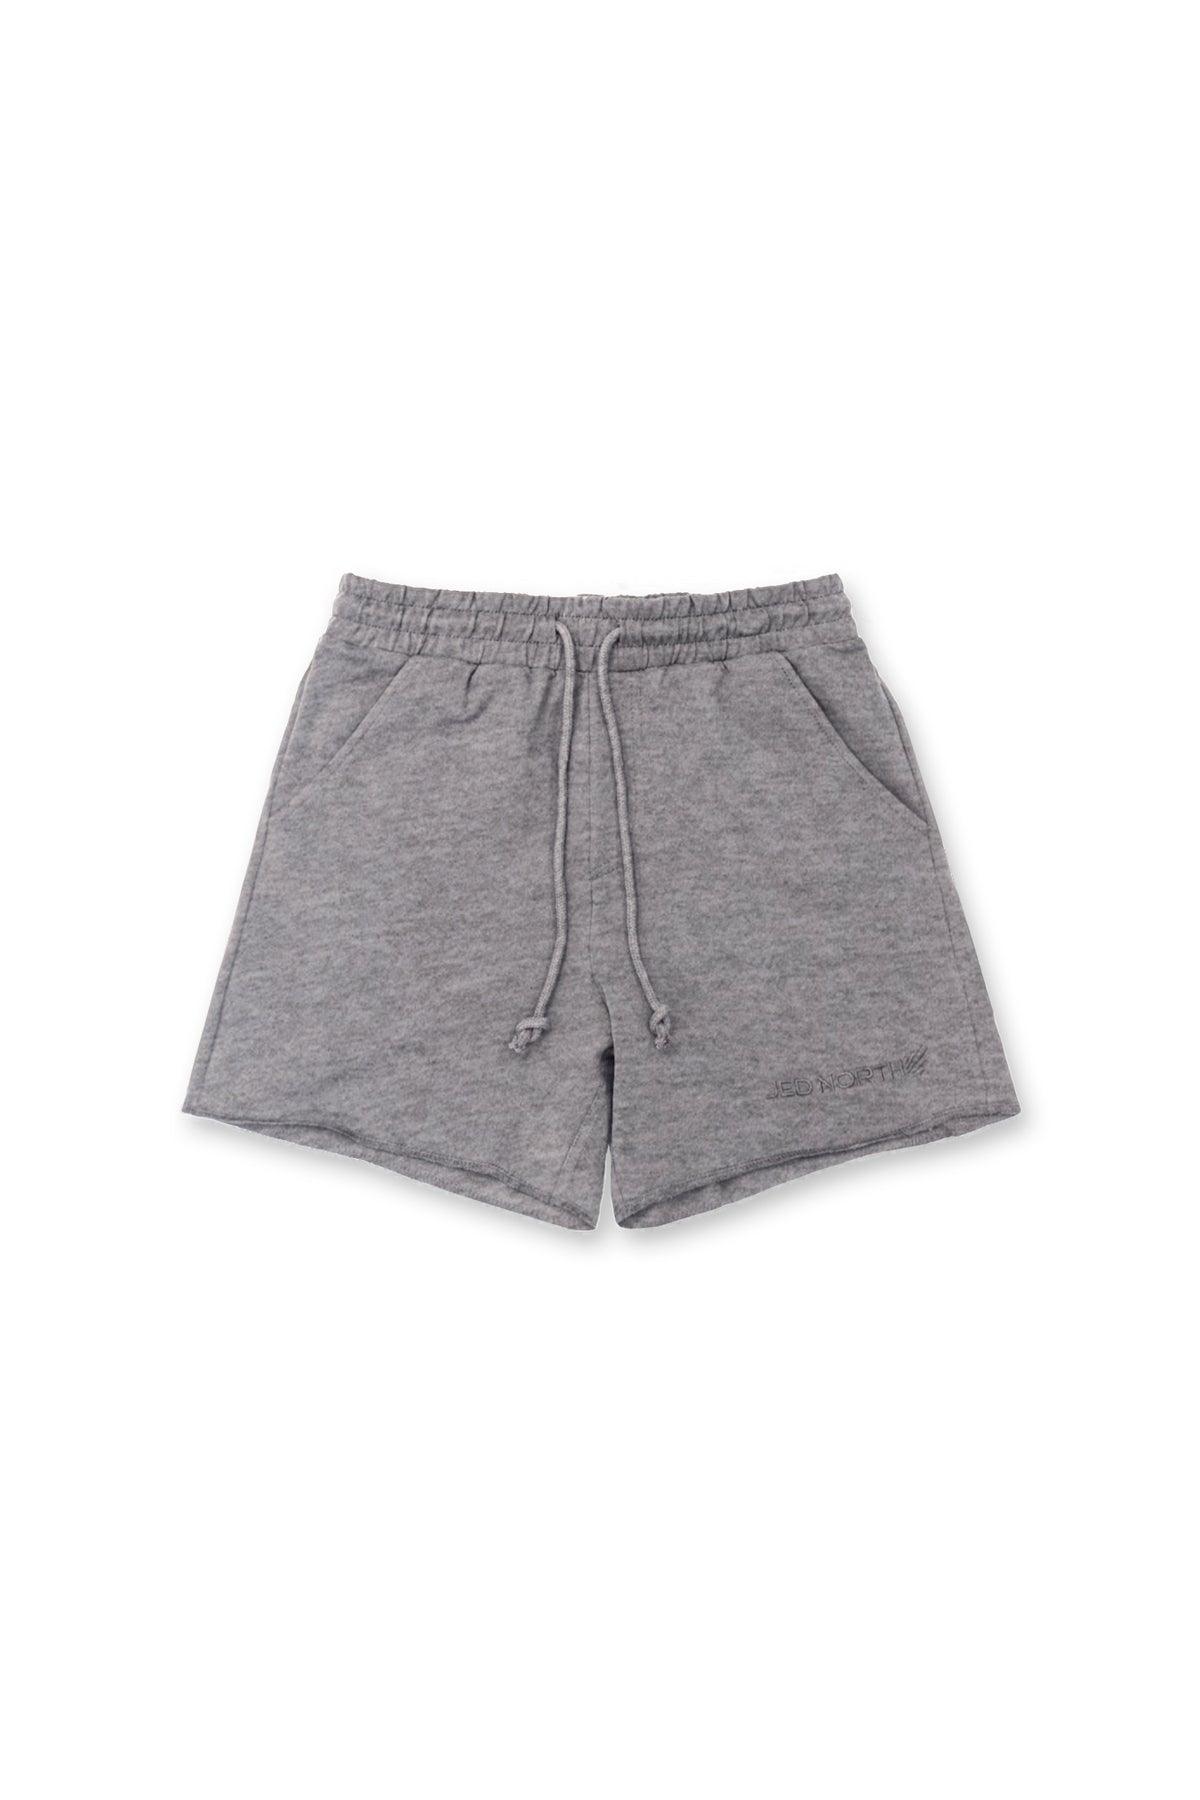 Motion 5'' Varsity Sweat Shorts - Dark Gray - Jed North